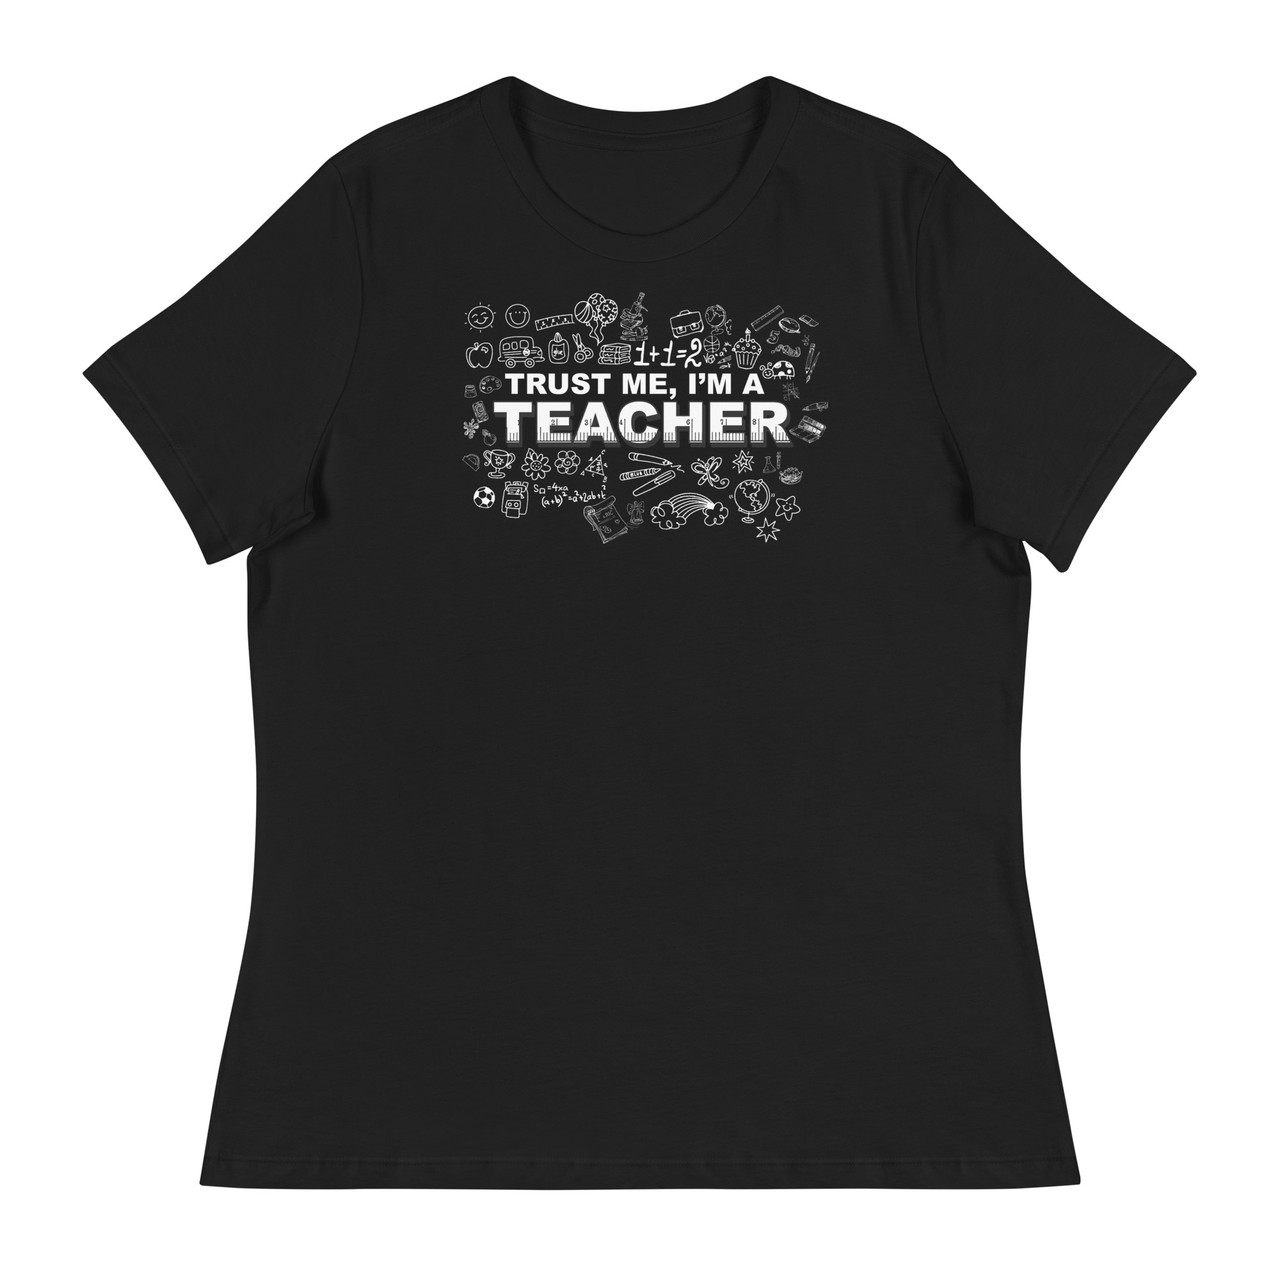 Trust Me I'm A Teacher Women's Relaxed T-Shirt - Bella + Canvas 6400 